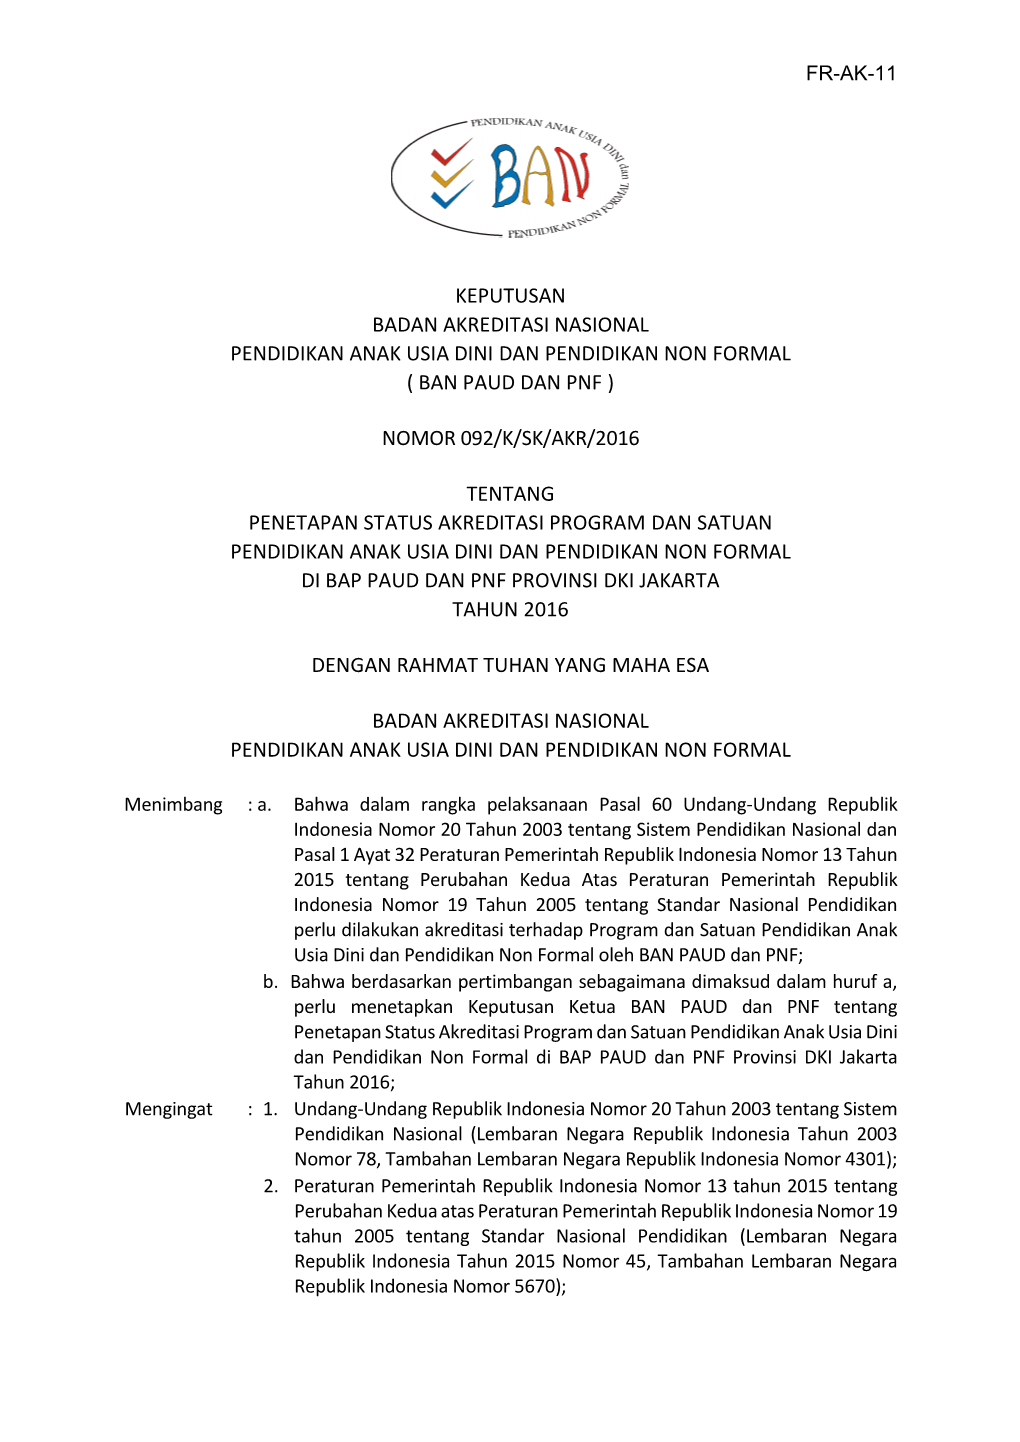 SK Hasil Akreditasi BAP PAUD Dan PNF Provinsi DKI 1508564187.Pdf